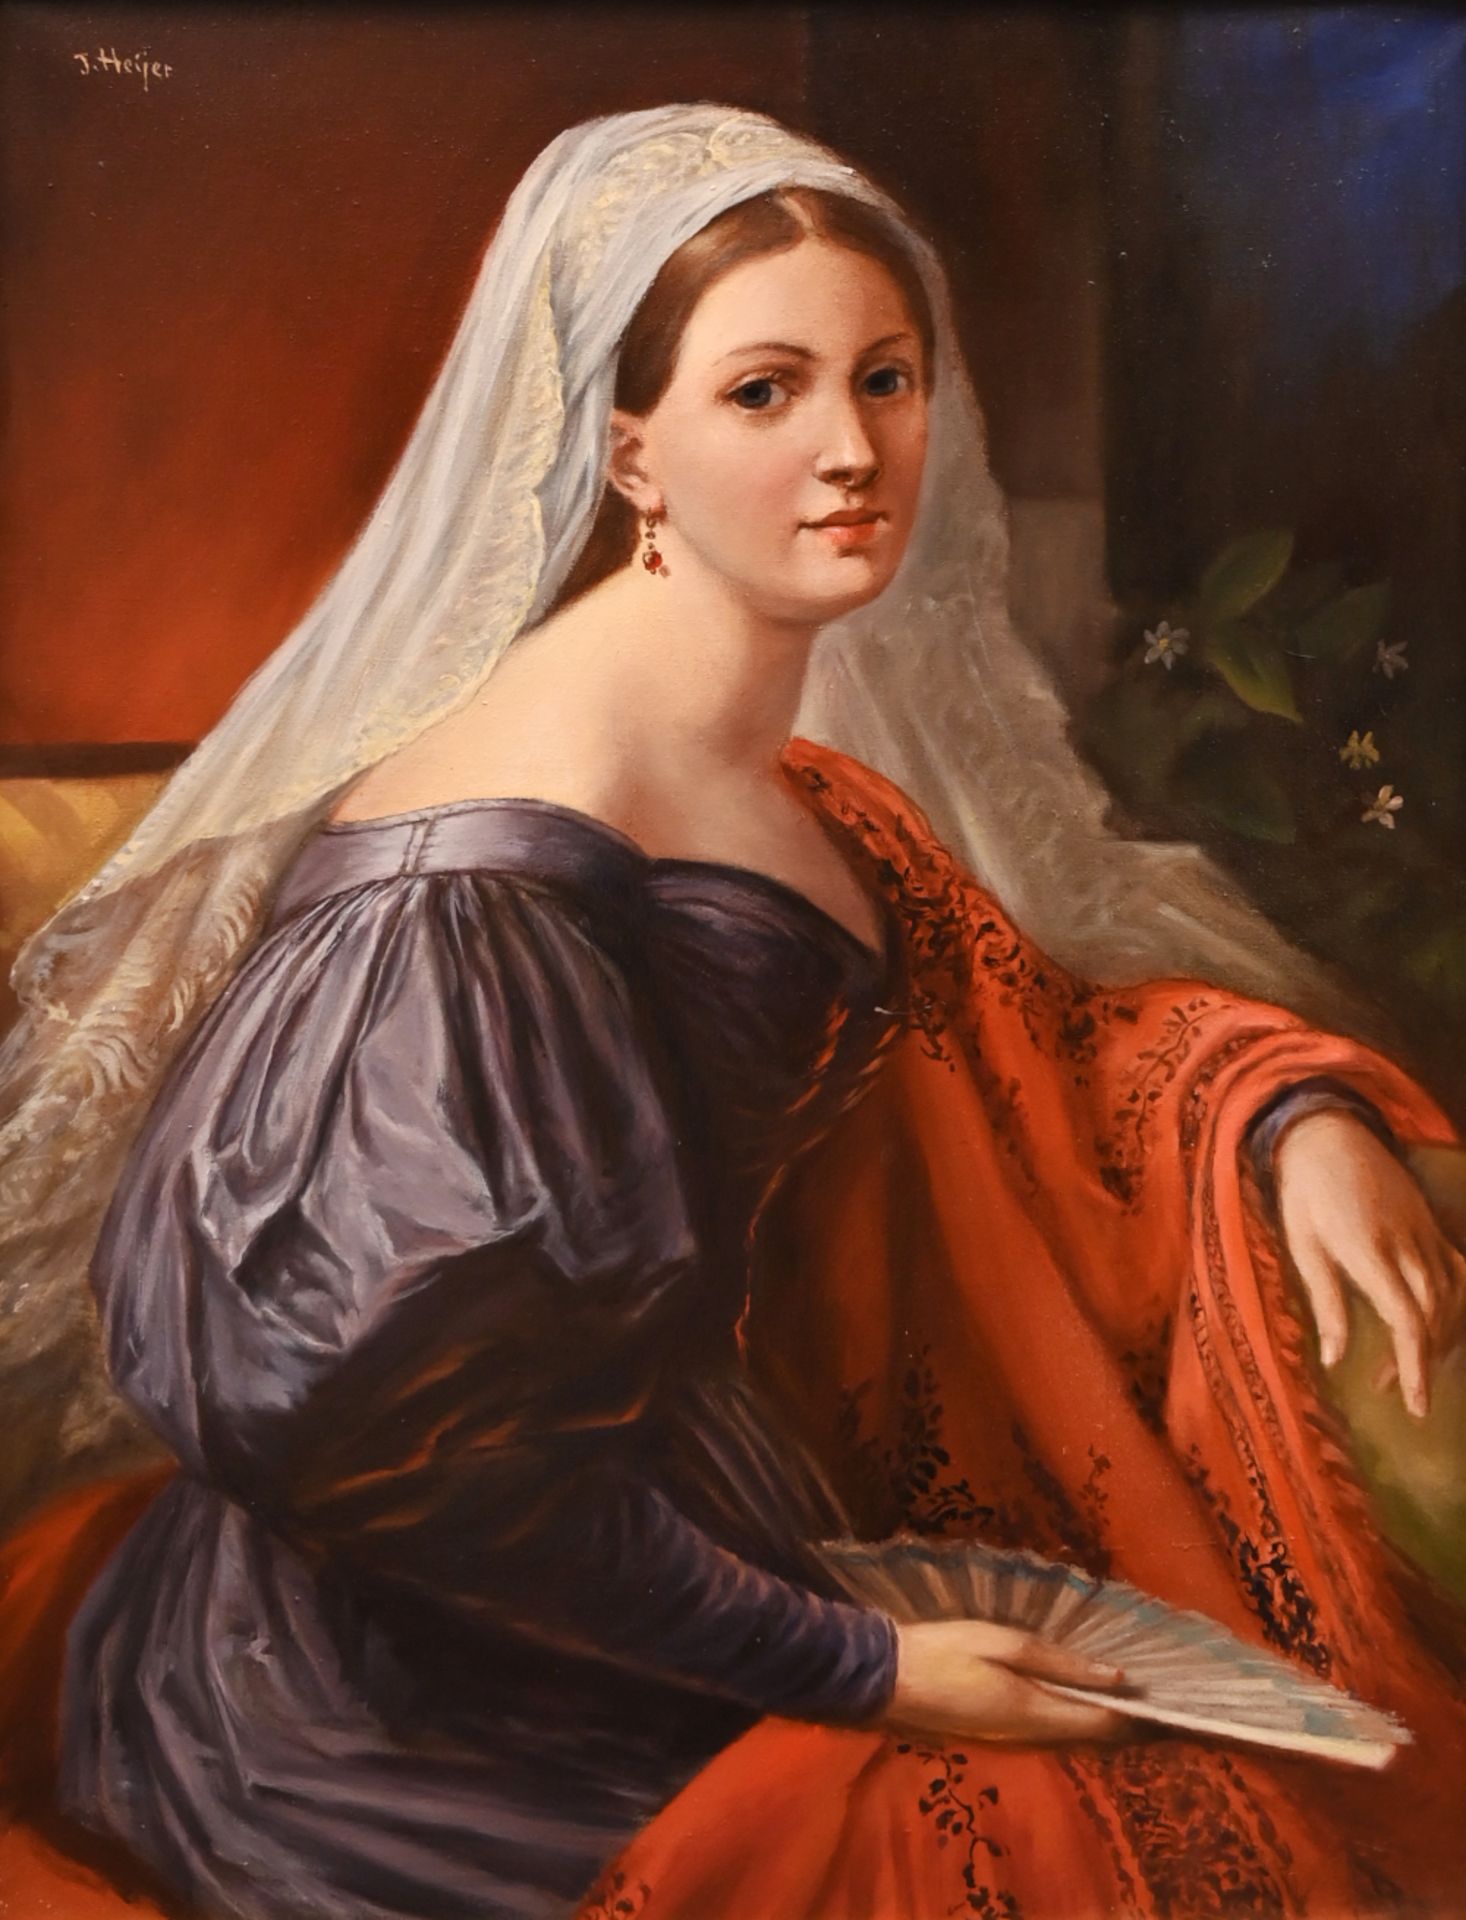 1 Ölgemälde l.o. sign. J. HEIJER (wohl Johan H. 1876-1961), "Portrait einer jungen Dame im Stil des 